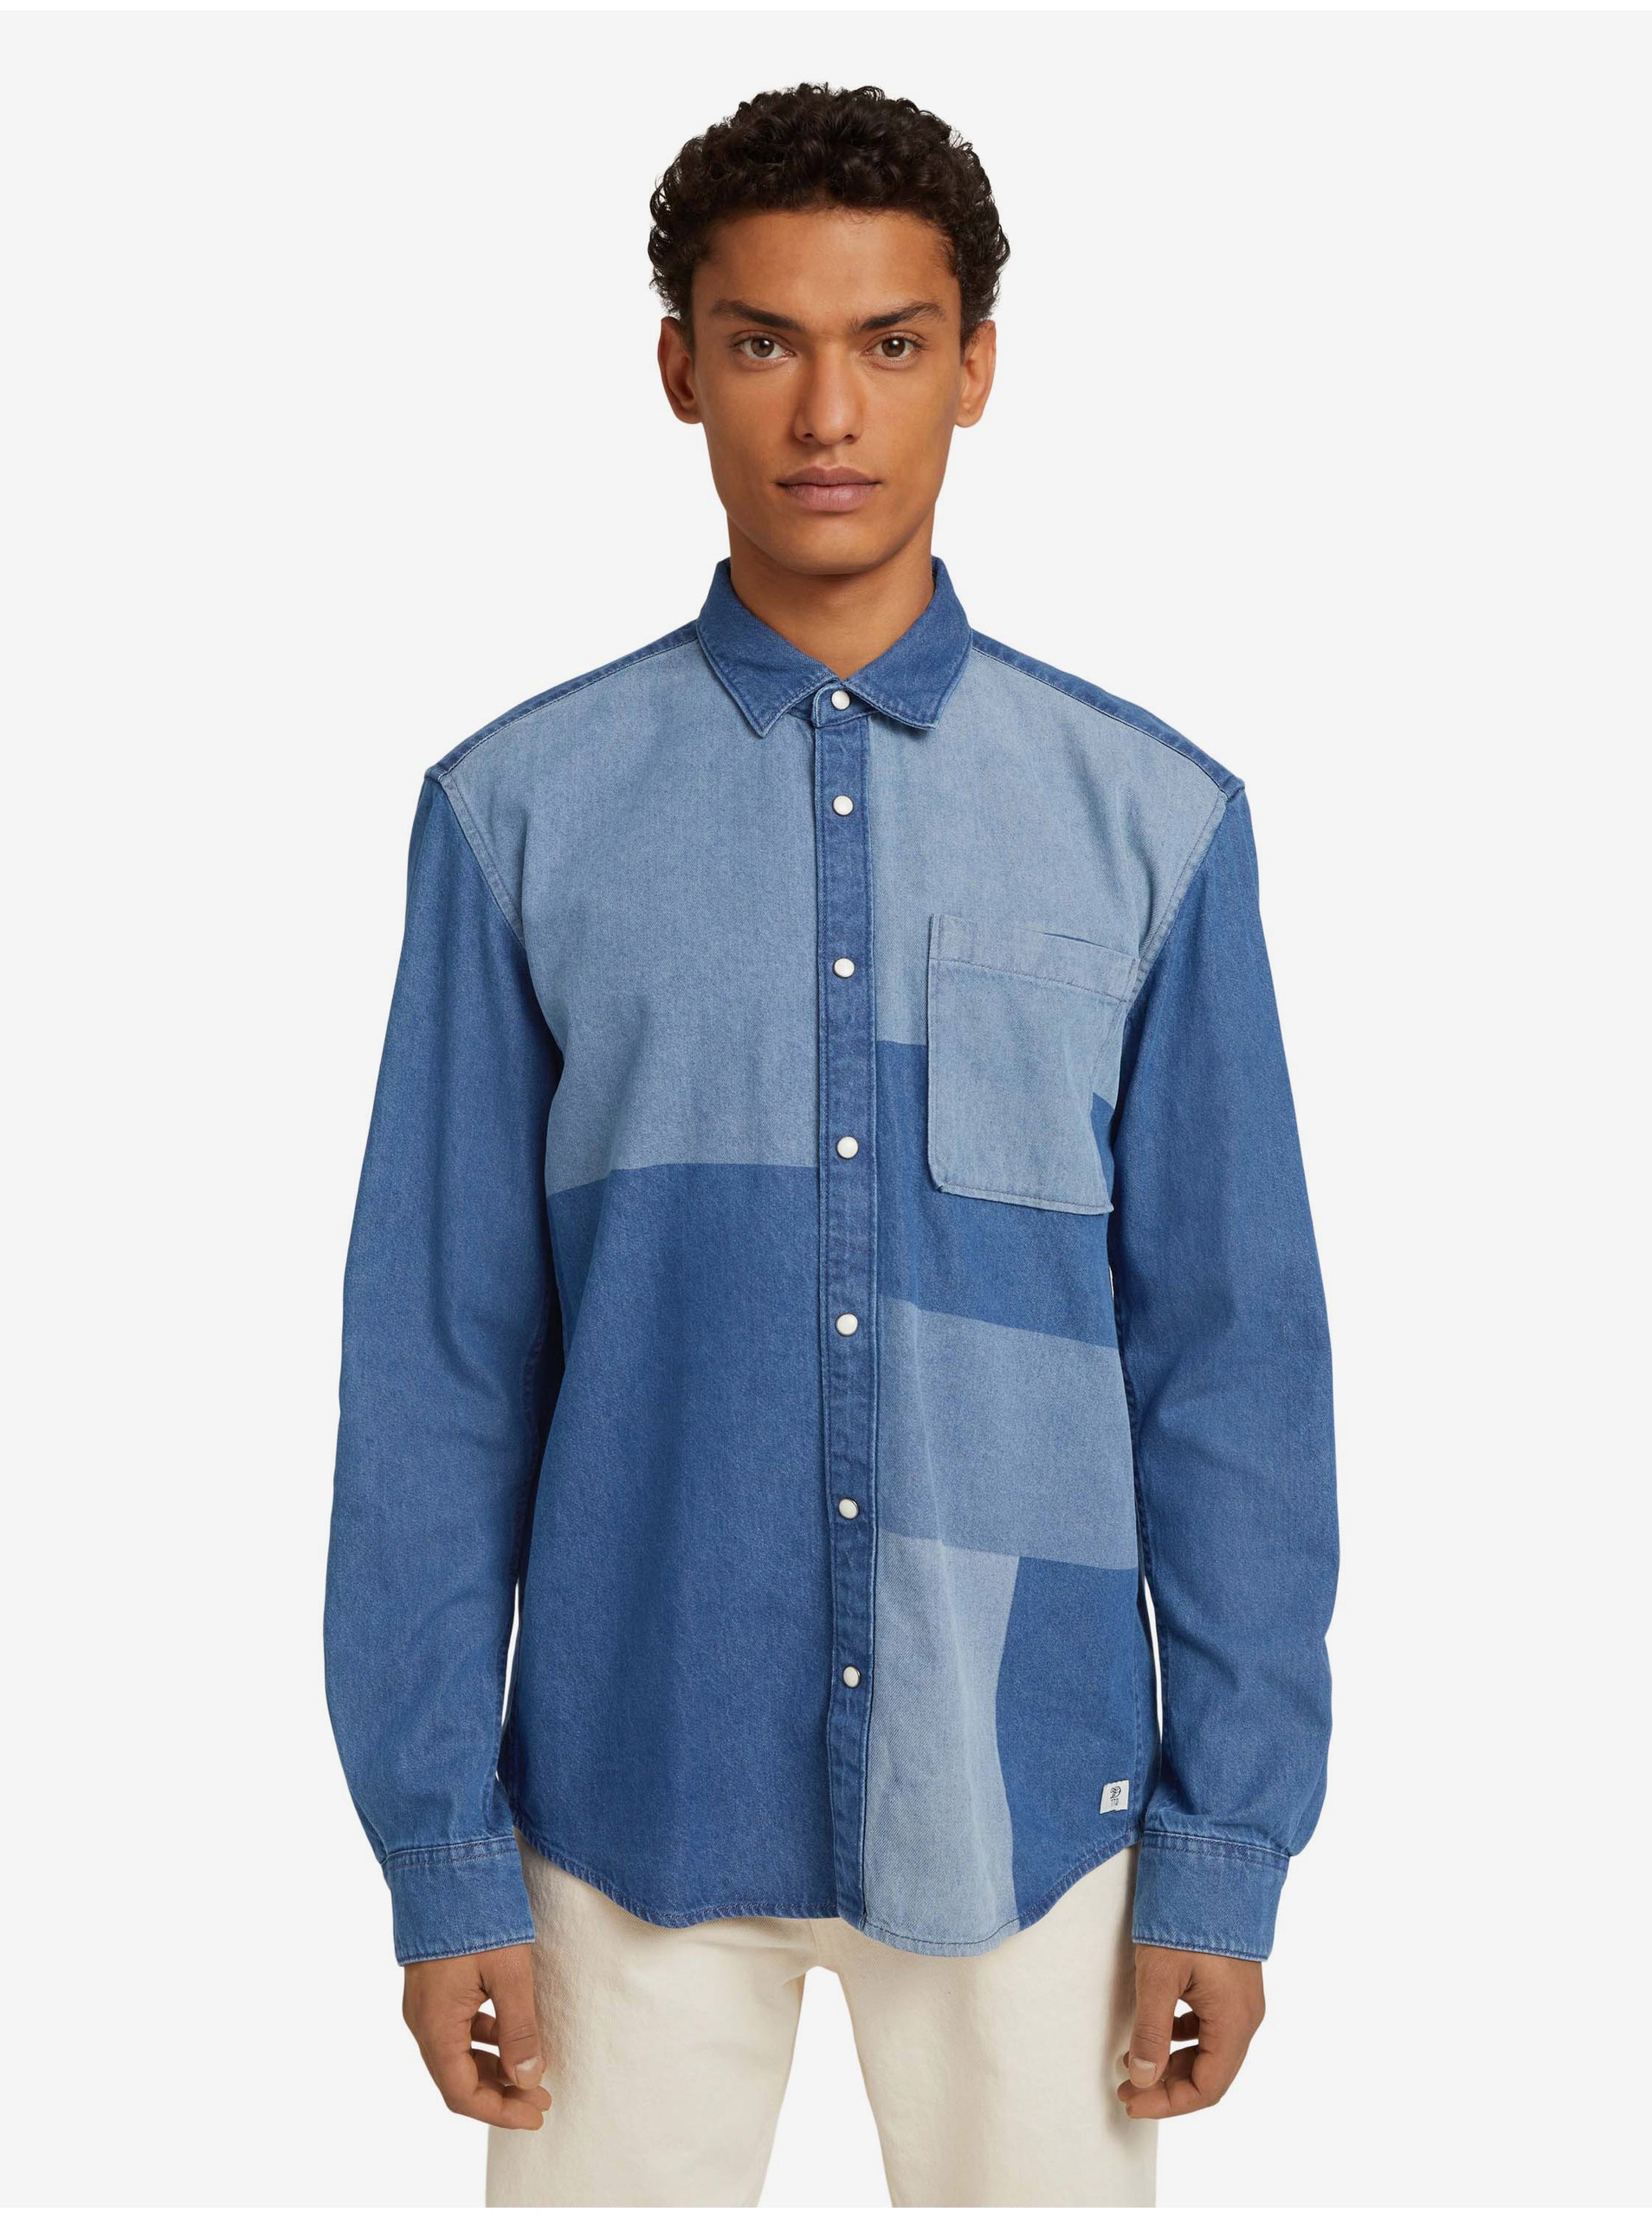 Lacno Modrá pánska rifľová košeľa Tom Tailor Denim